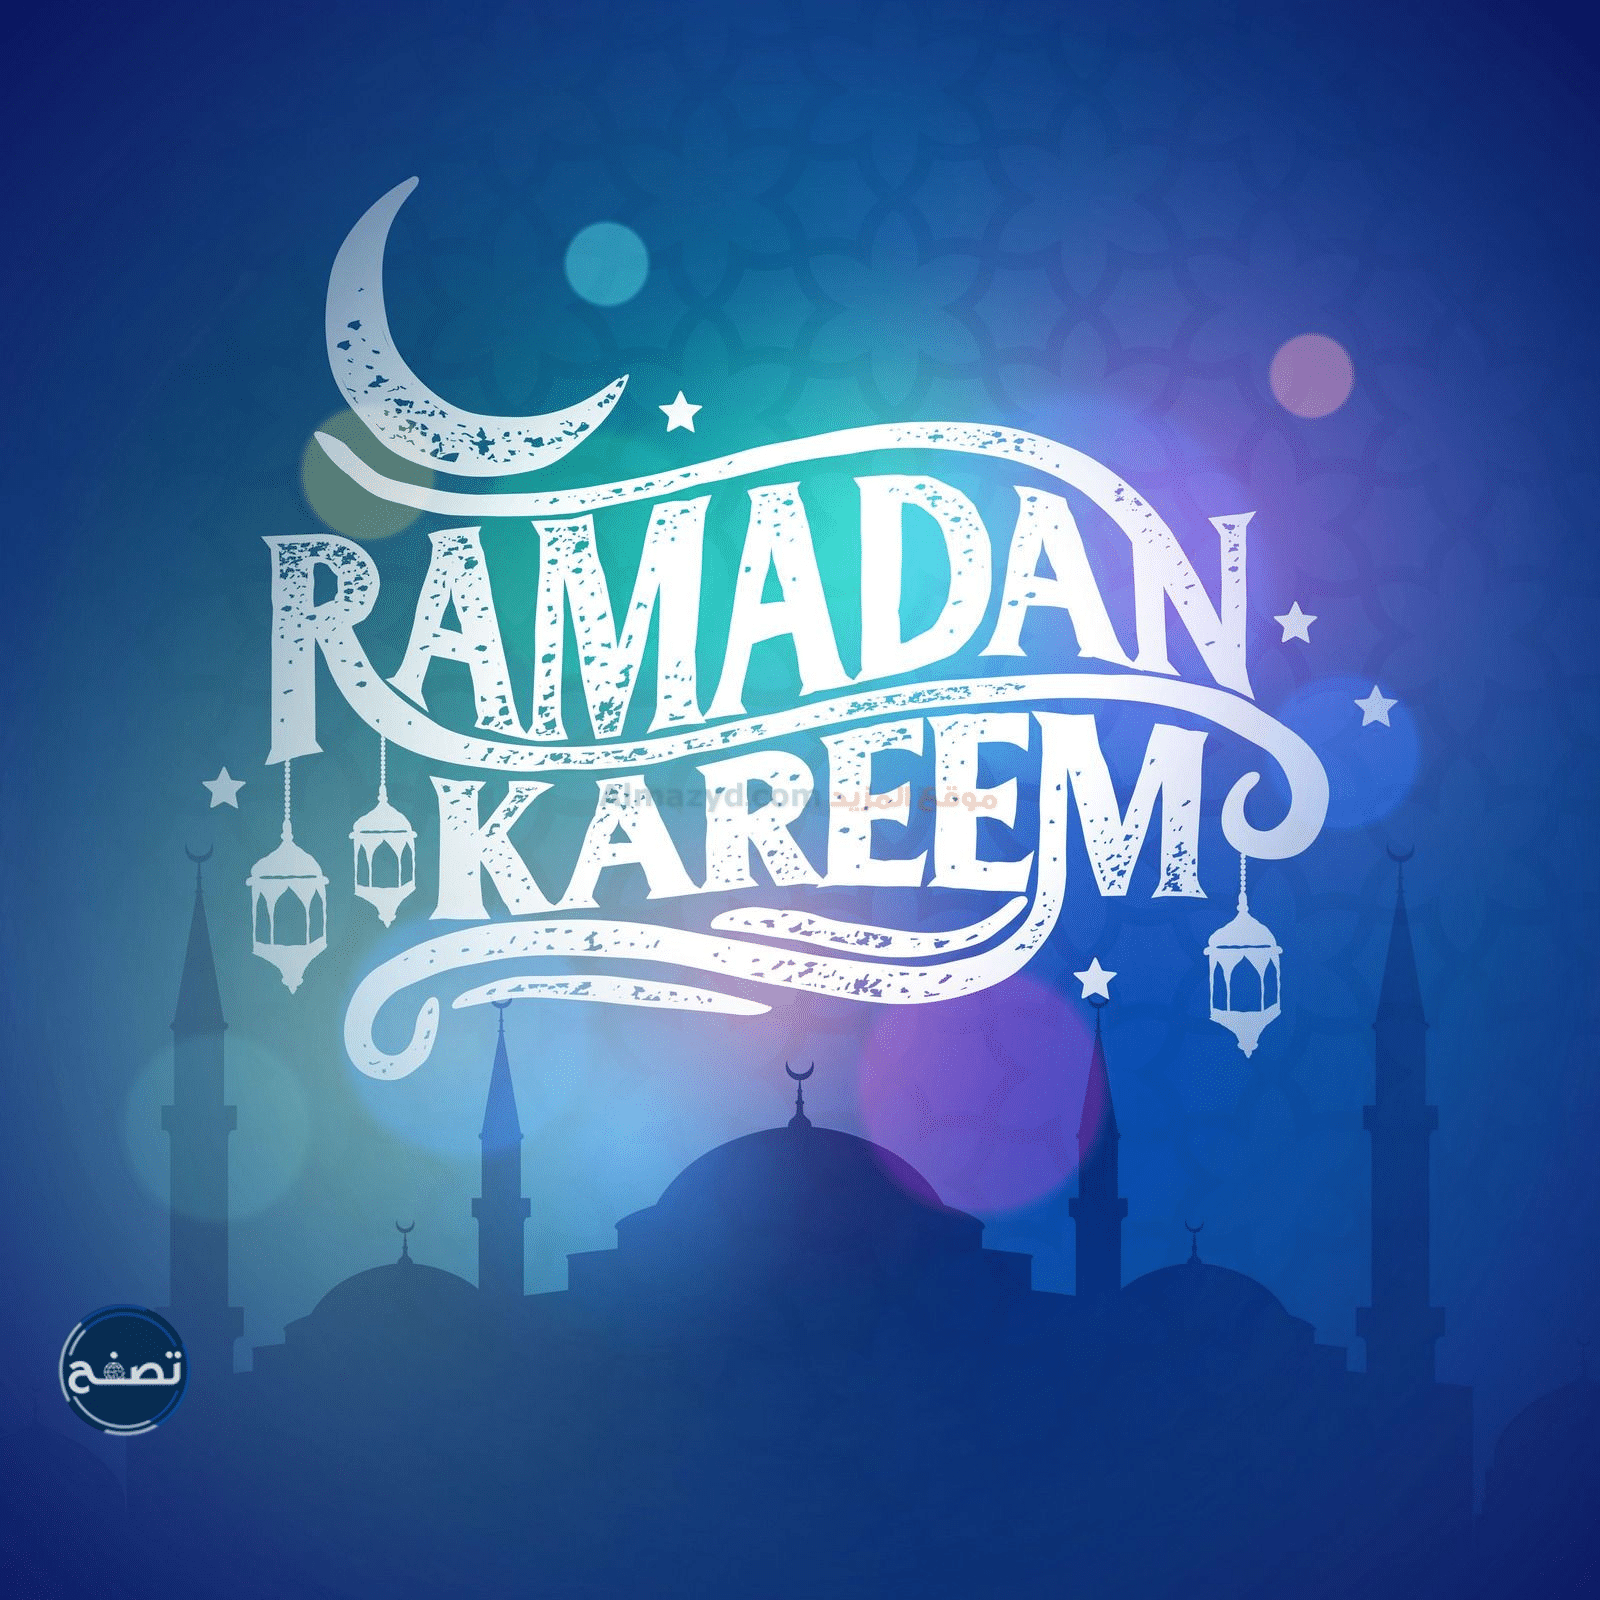 للأهل والأصدقاء تهنئة رسمية بمناسبة رمضان 2022